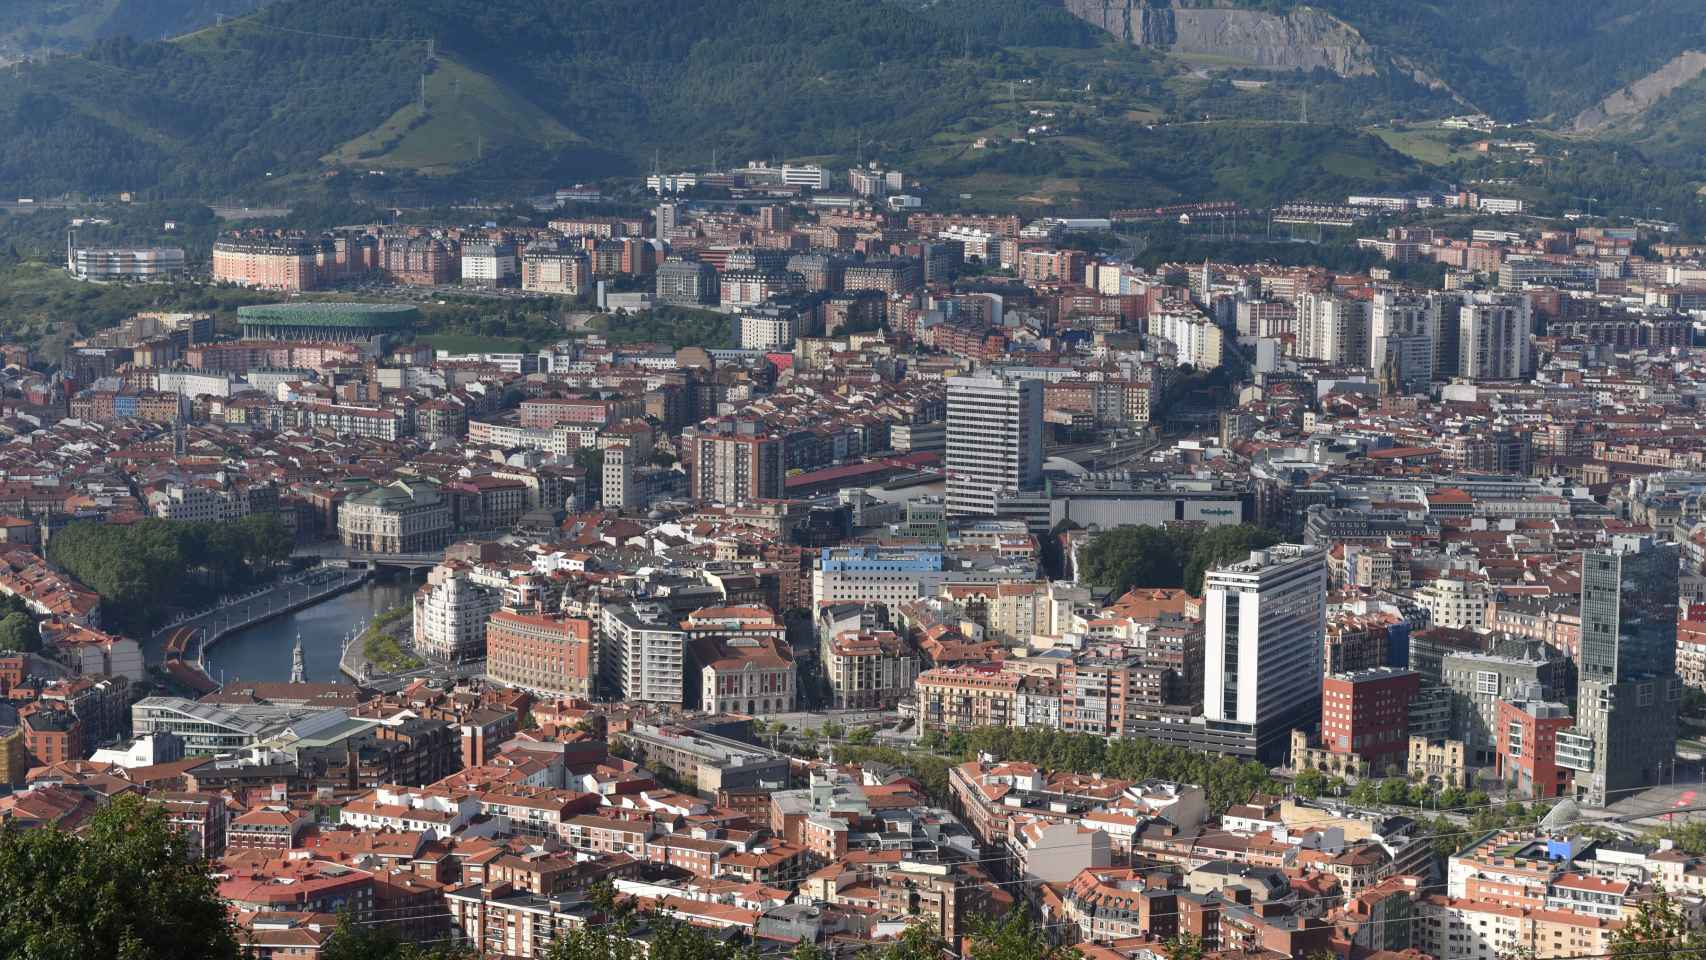 Imagen aérea de Bilbao / Ayuntamiento de Bilbao